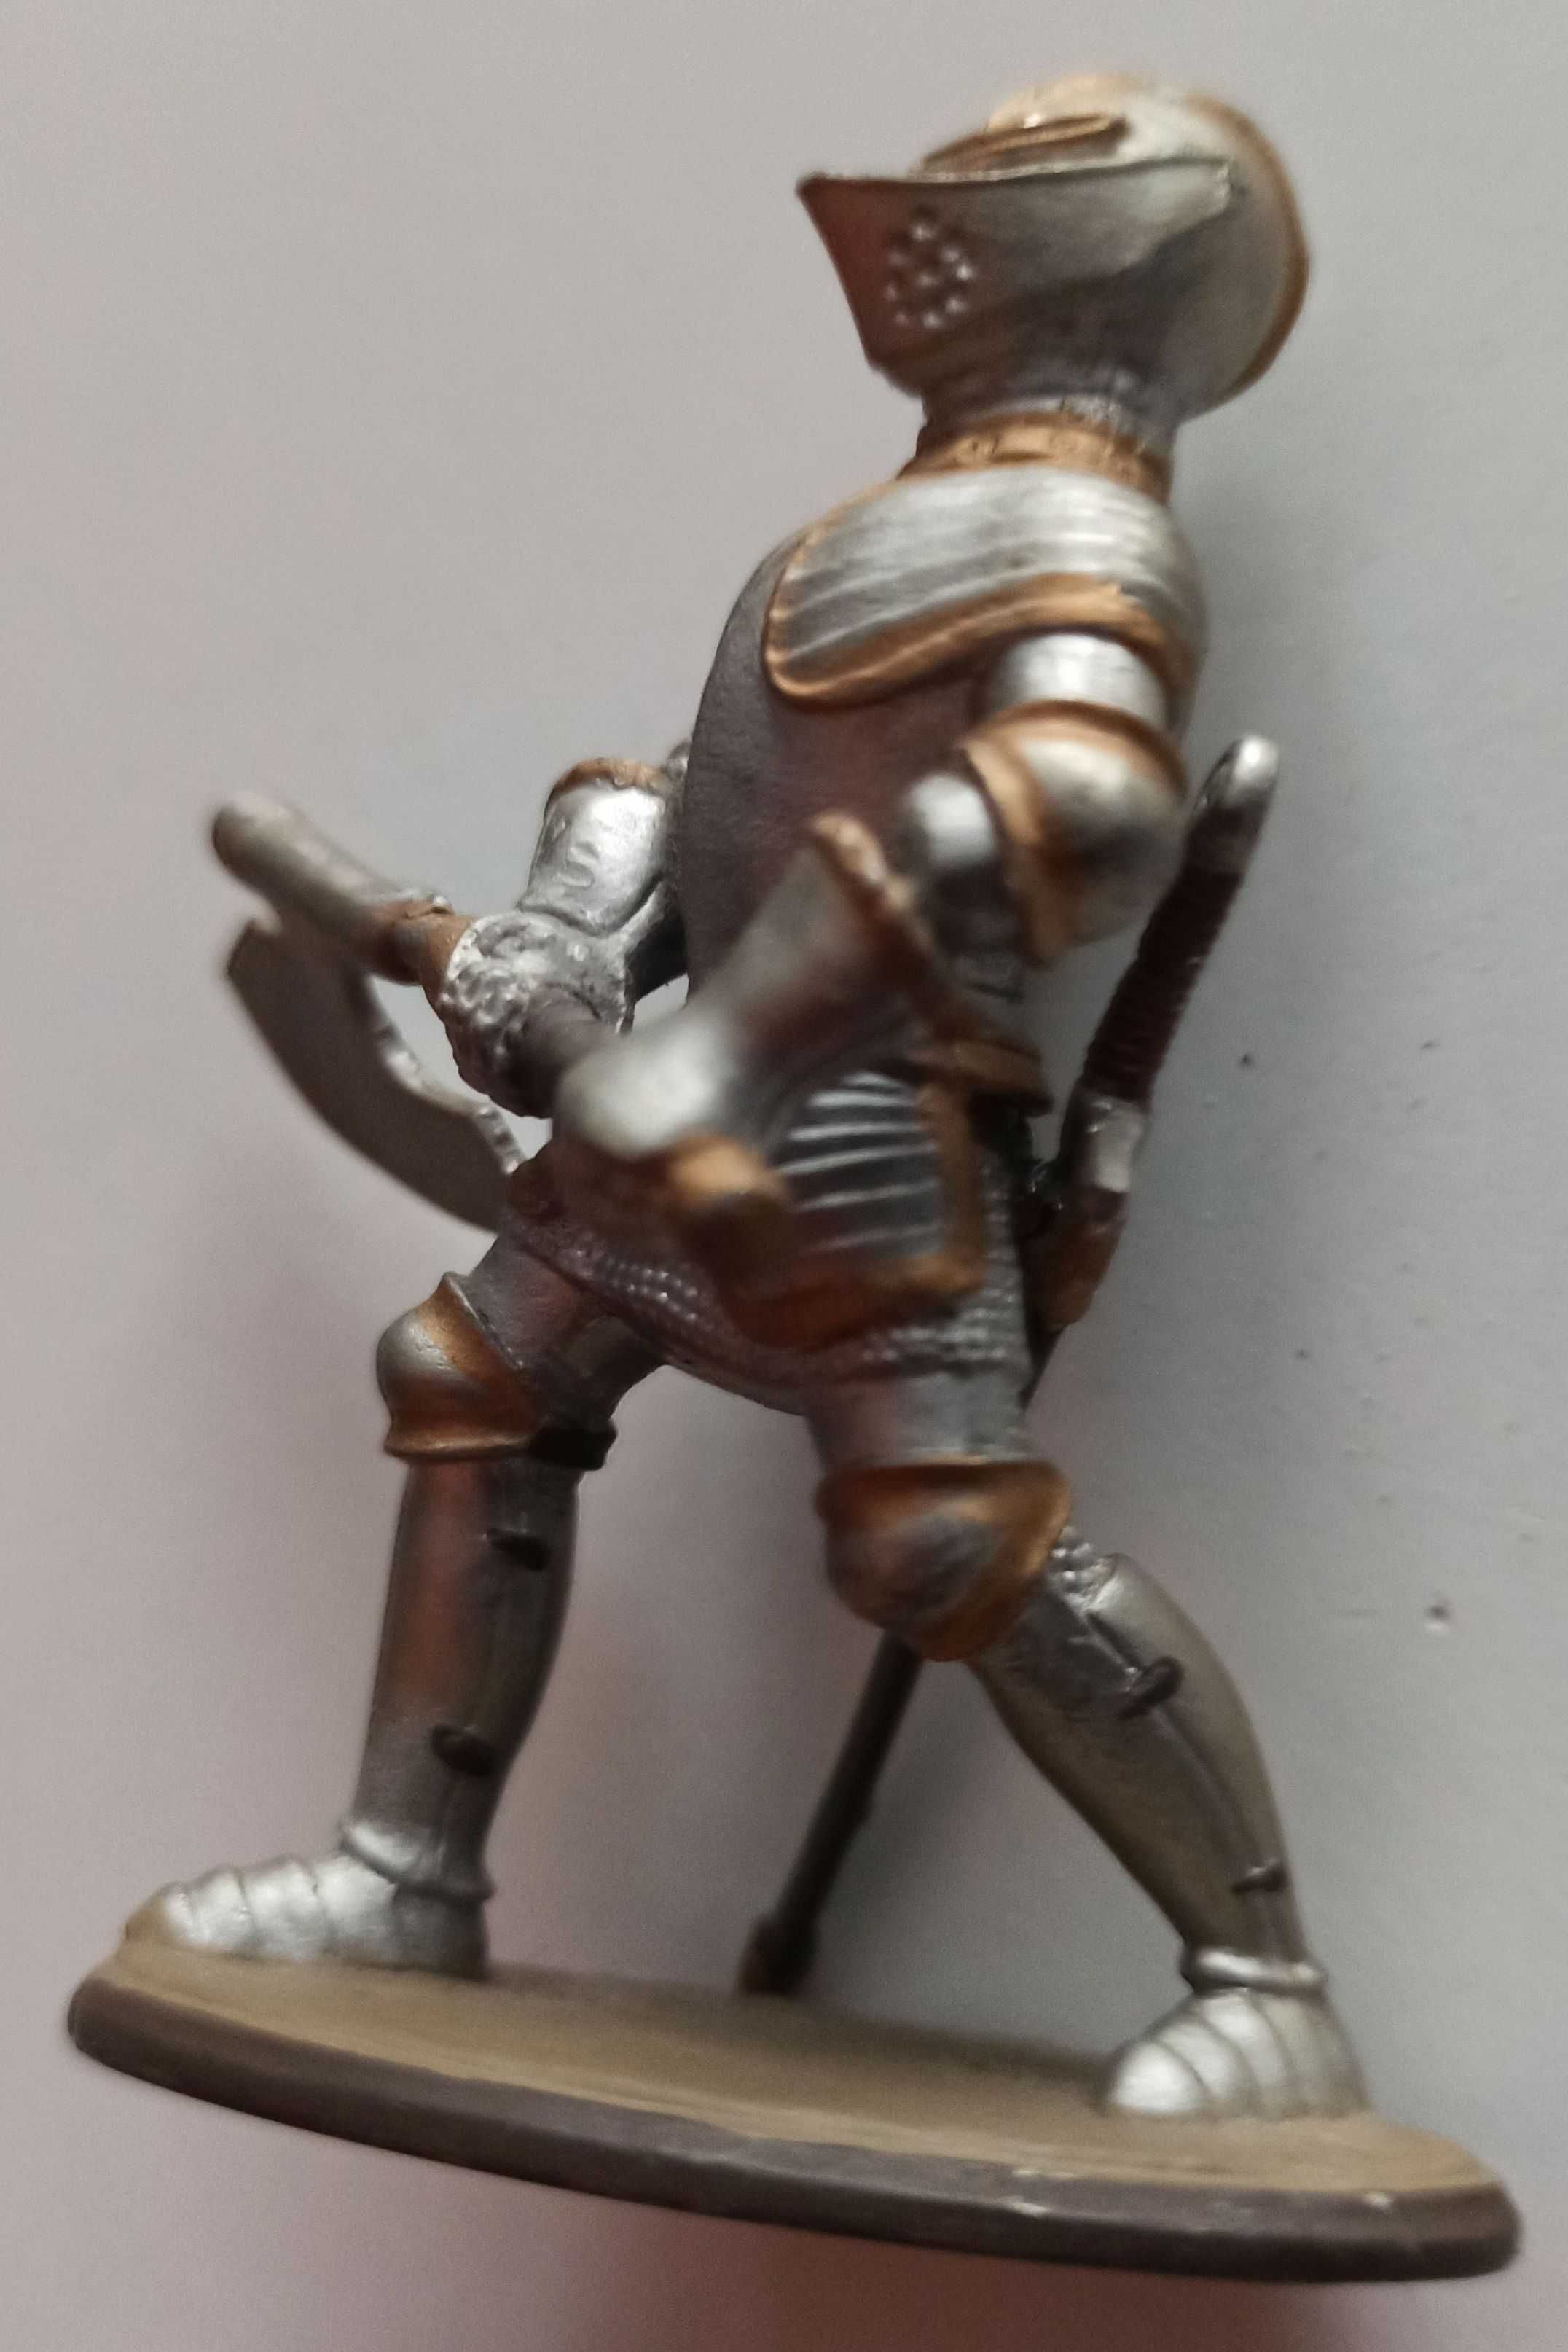 średniowieczny rycerz z toporem - metalowa figurka ruchome ręce